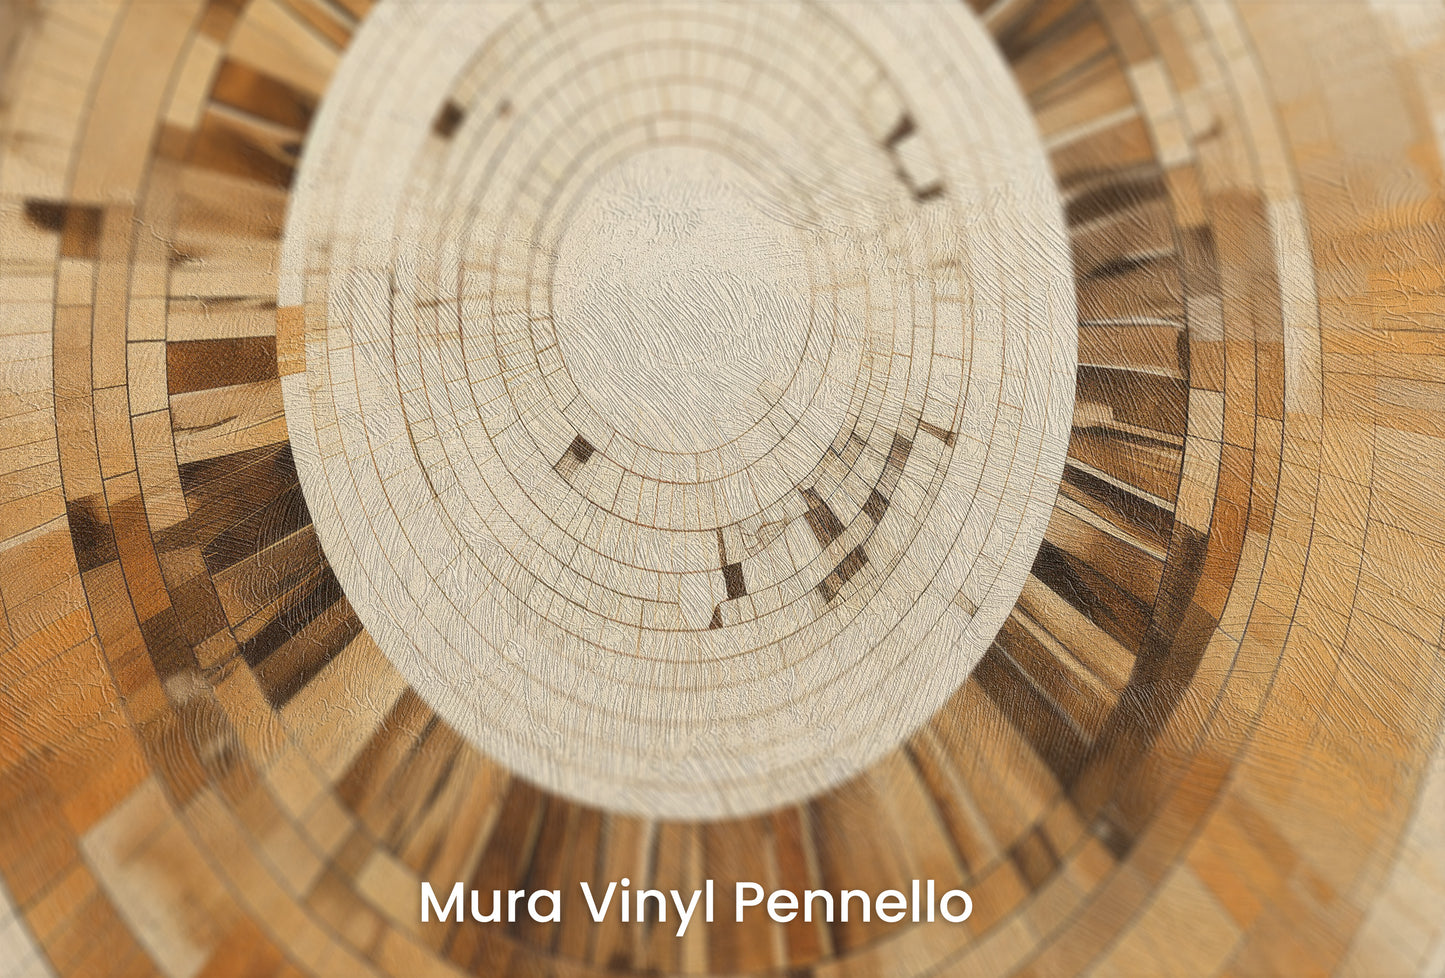 Zbliżenie na artystyczną fototapetę o nazwie ARCHITECTURAL ORBITAL DESIGN na podłożu Mura Vinyl Pennello - faktura pociągnięć pędzla malarskiego.